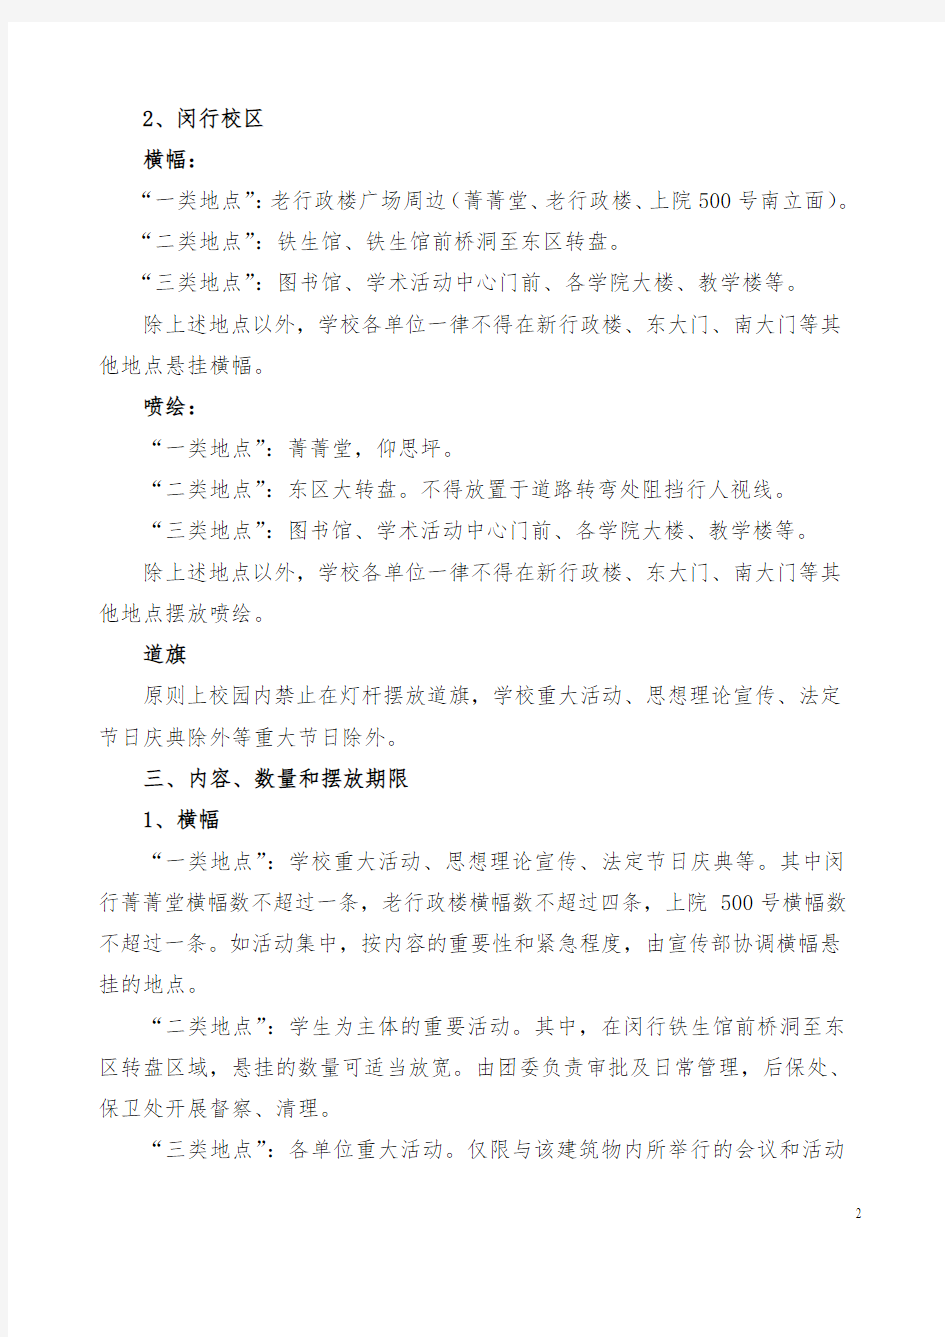 校园活动申请表-上海交通大学